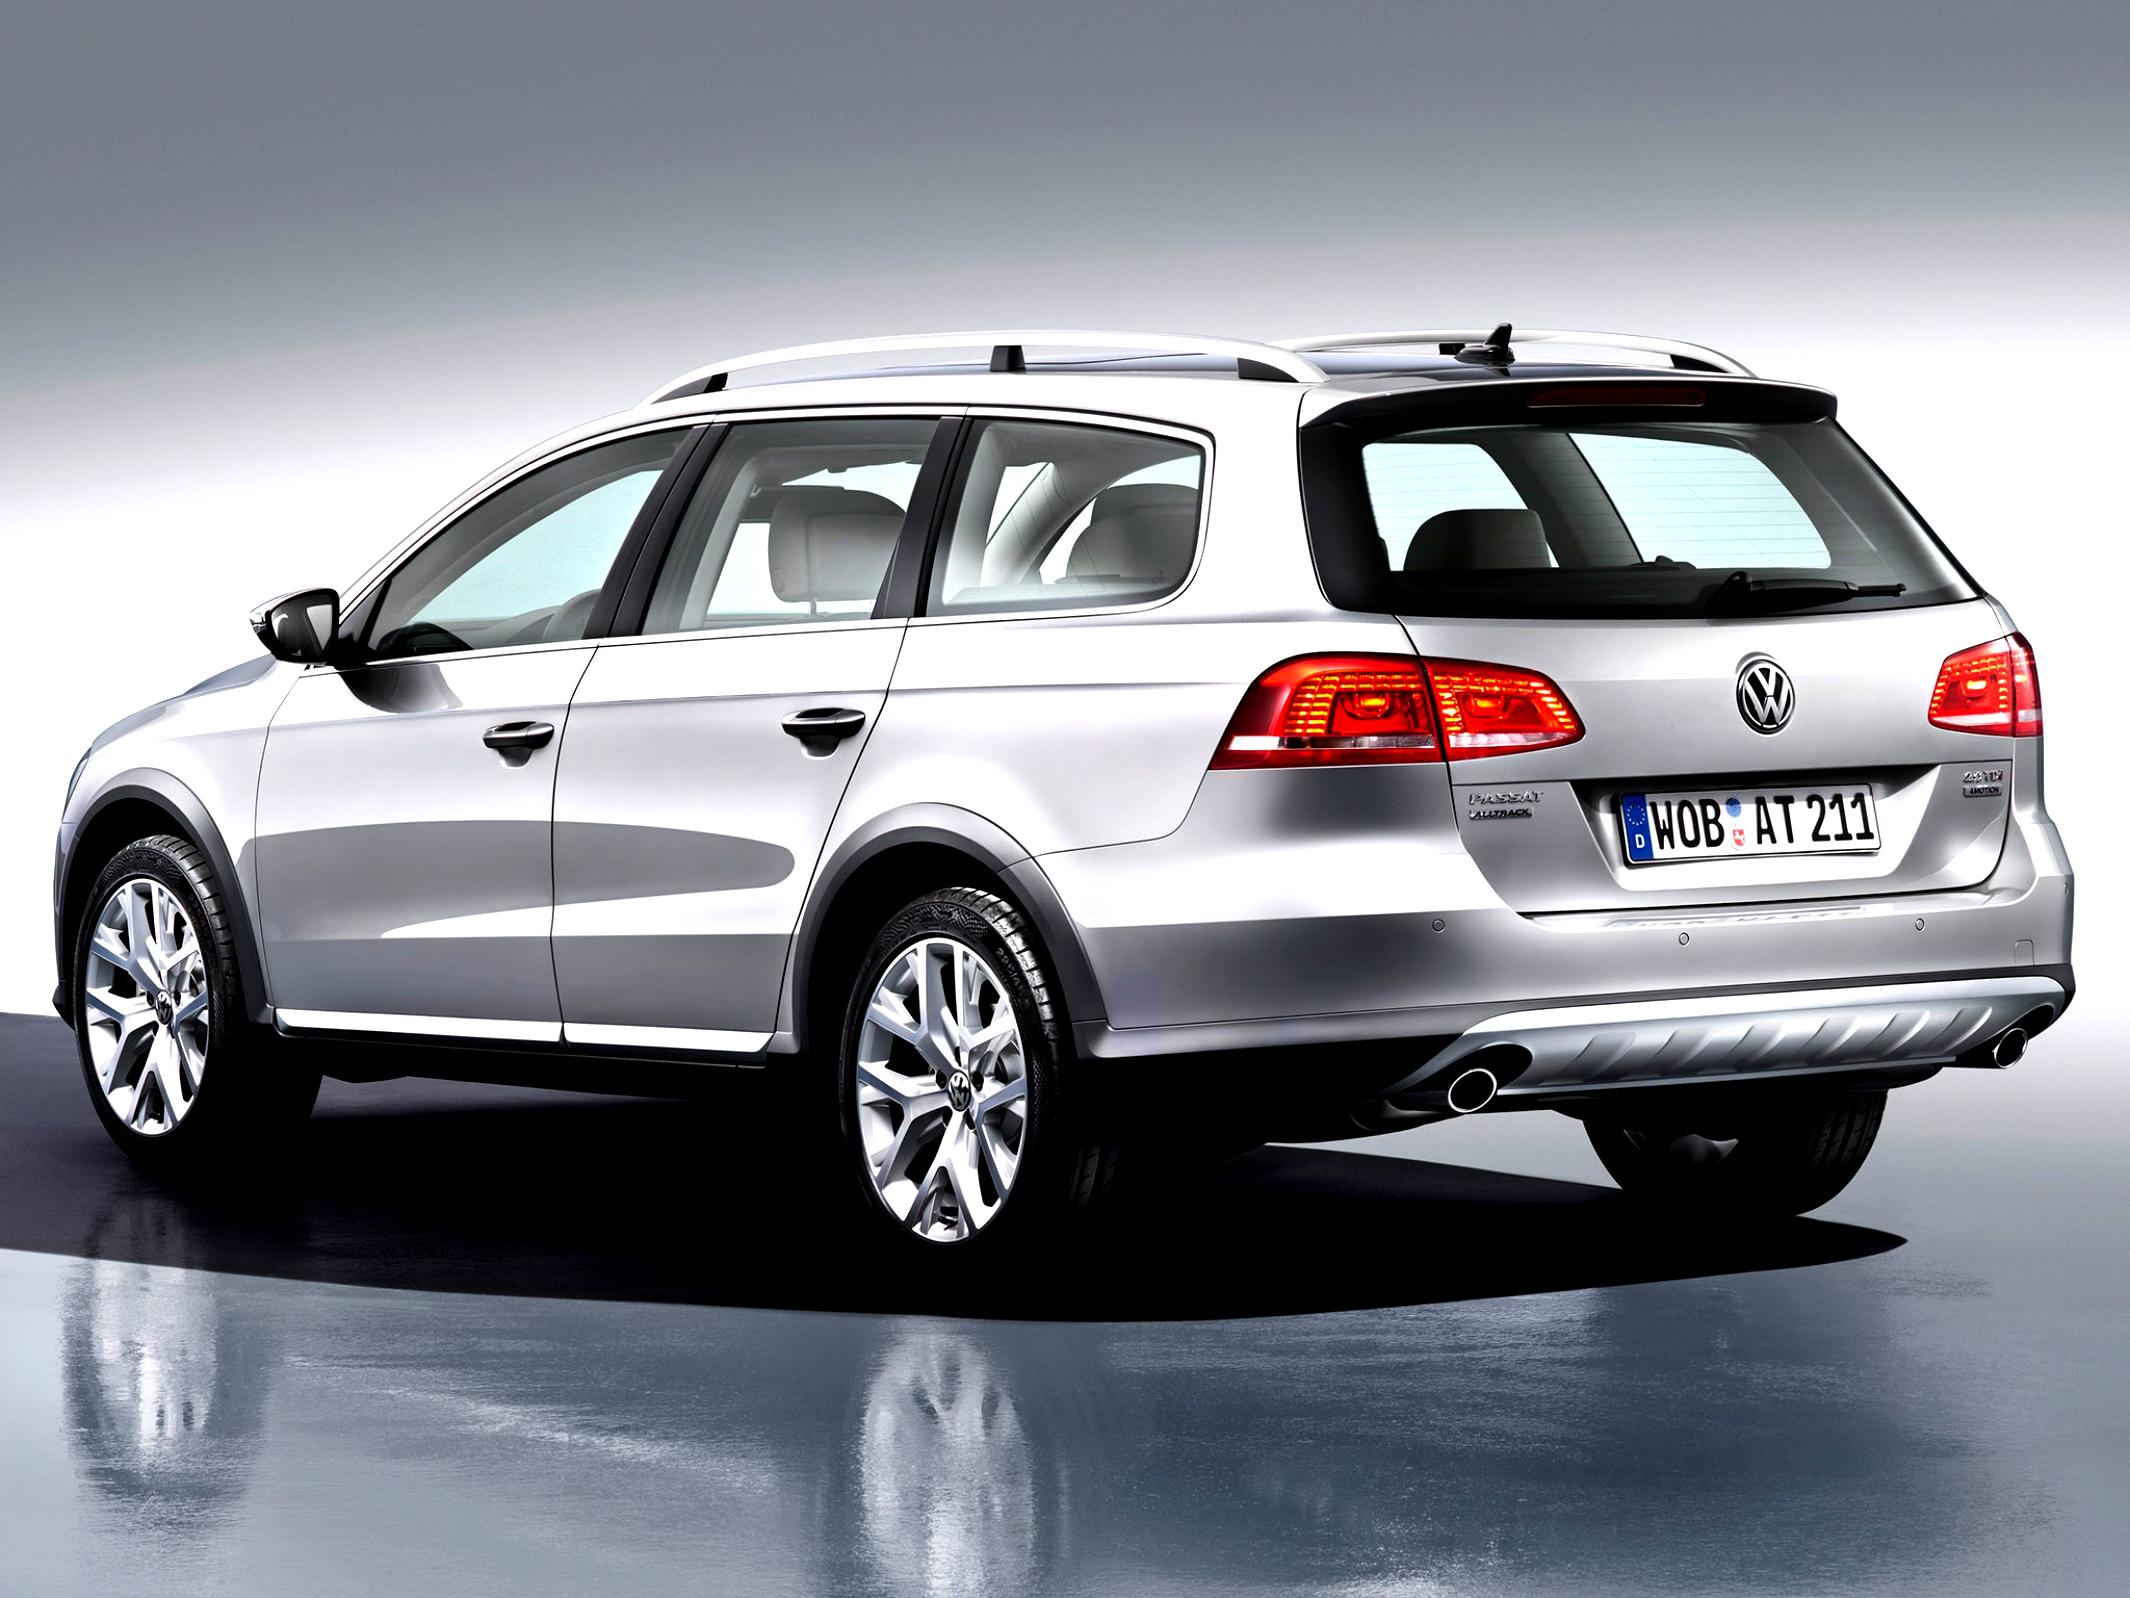 Volkswagen Passat Alltrack 2012 #2